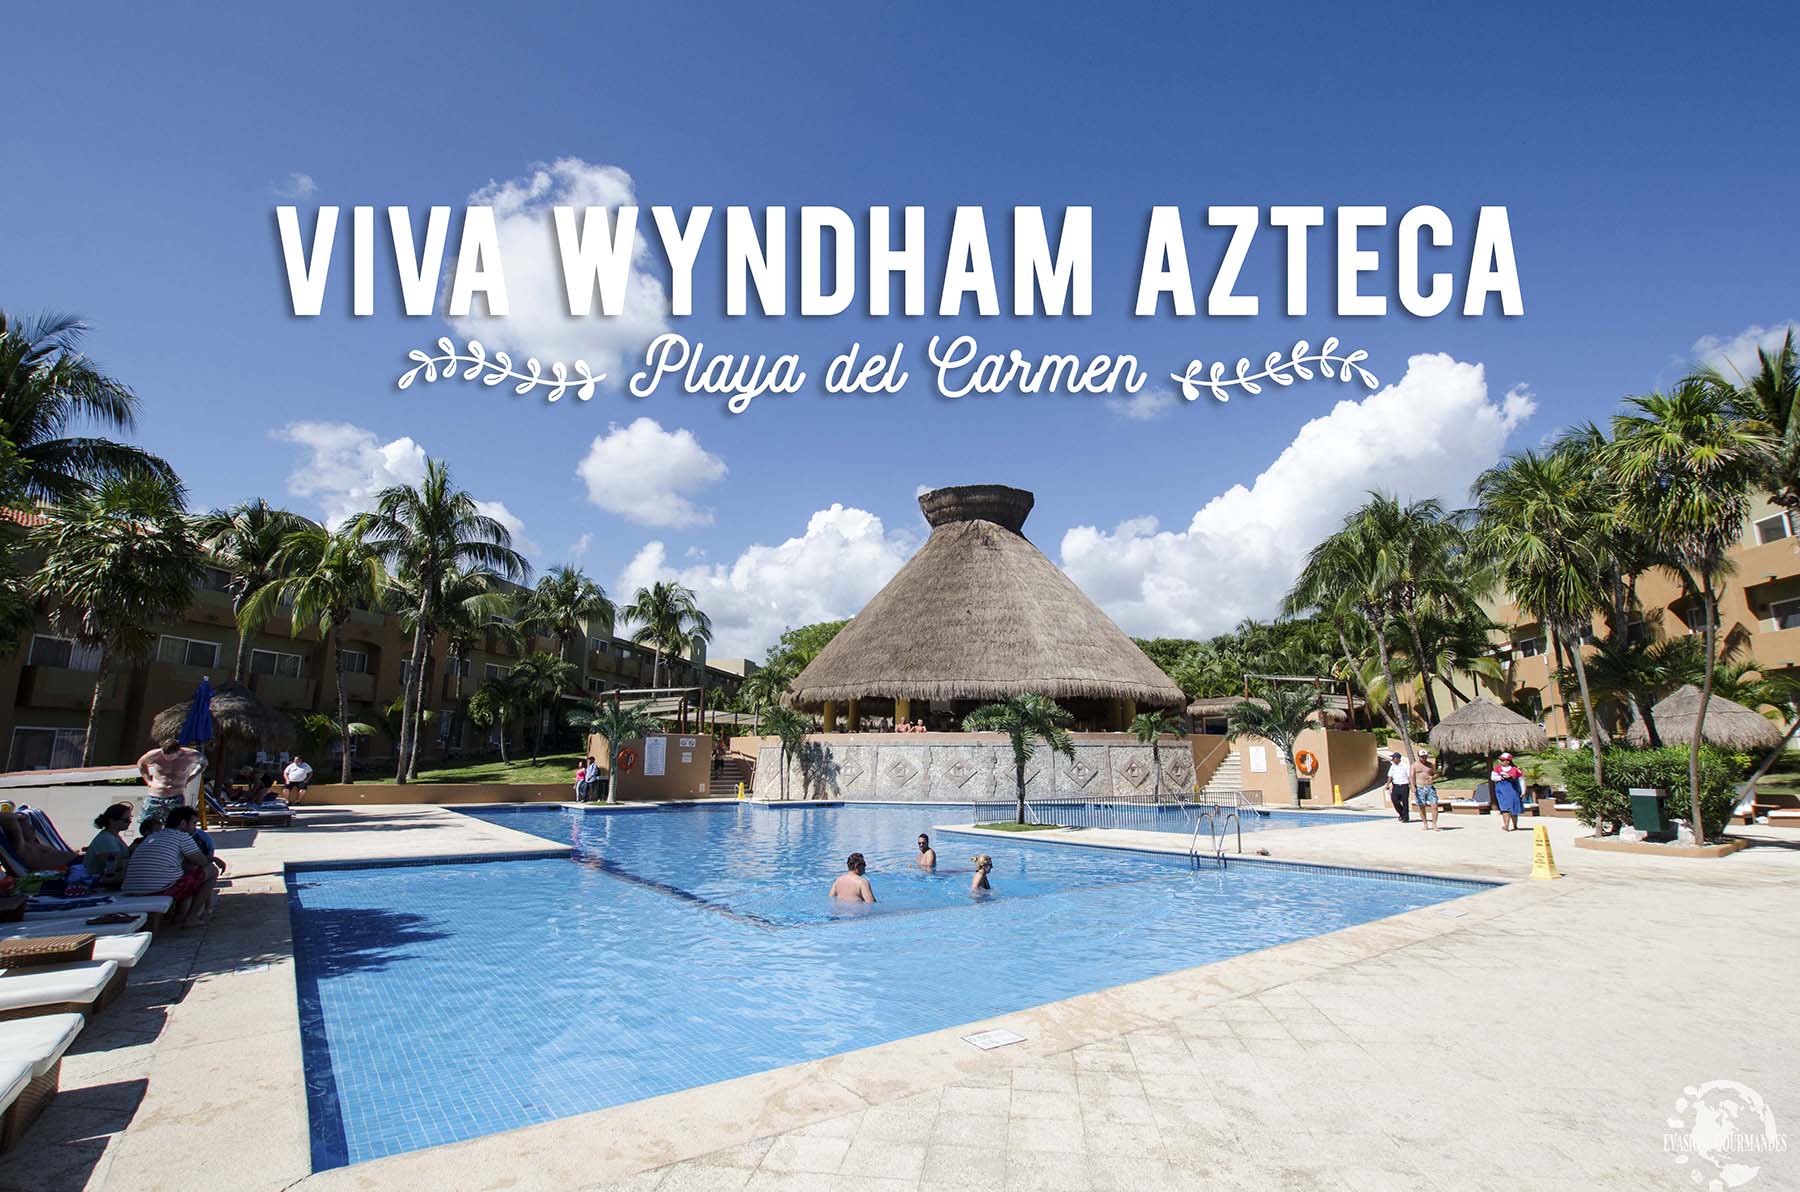 Viva Wyndham Azteca